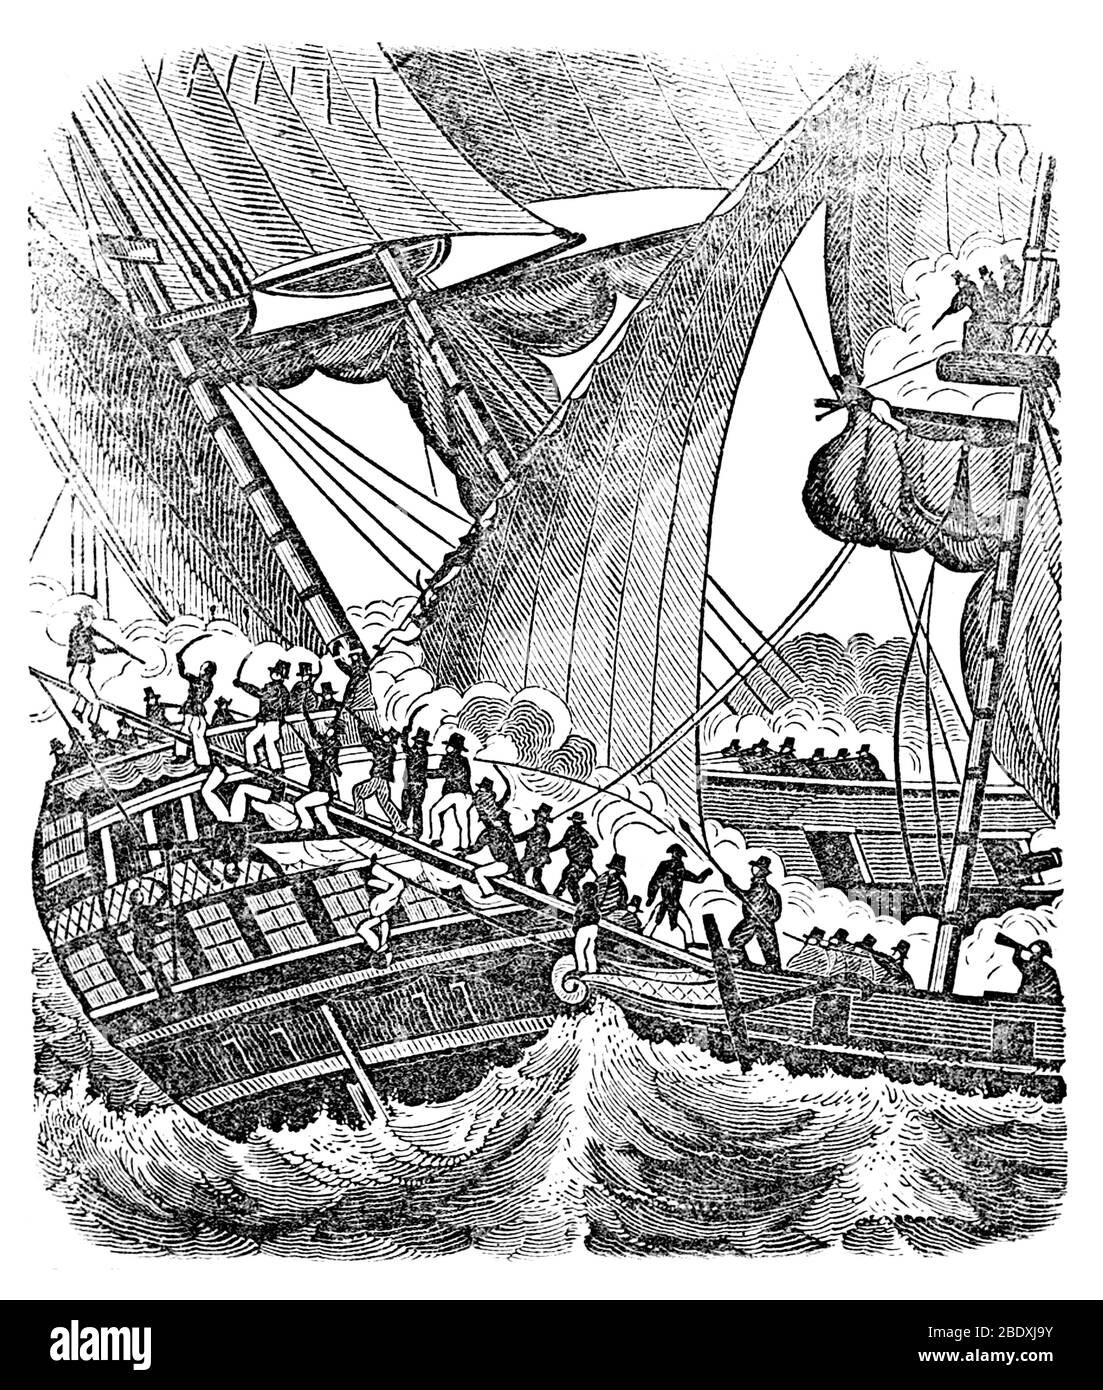 Le pirate français Jean Lafitte et son équipage envahissent le navire Banque D'Images